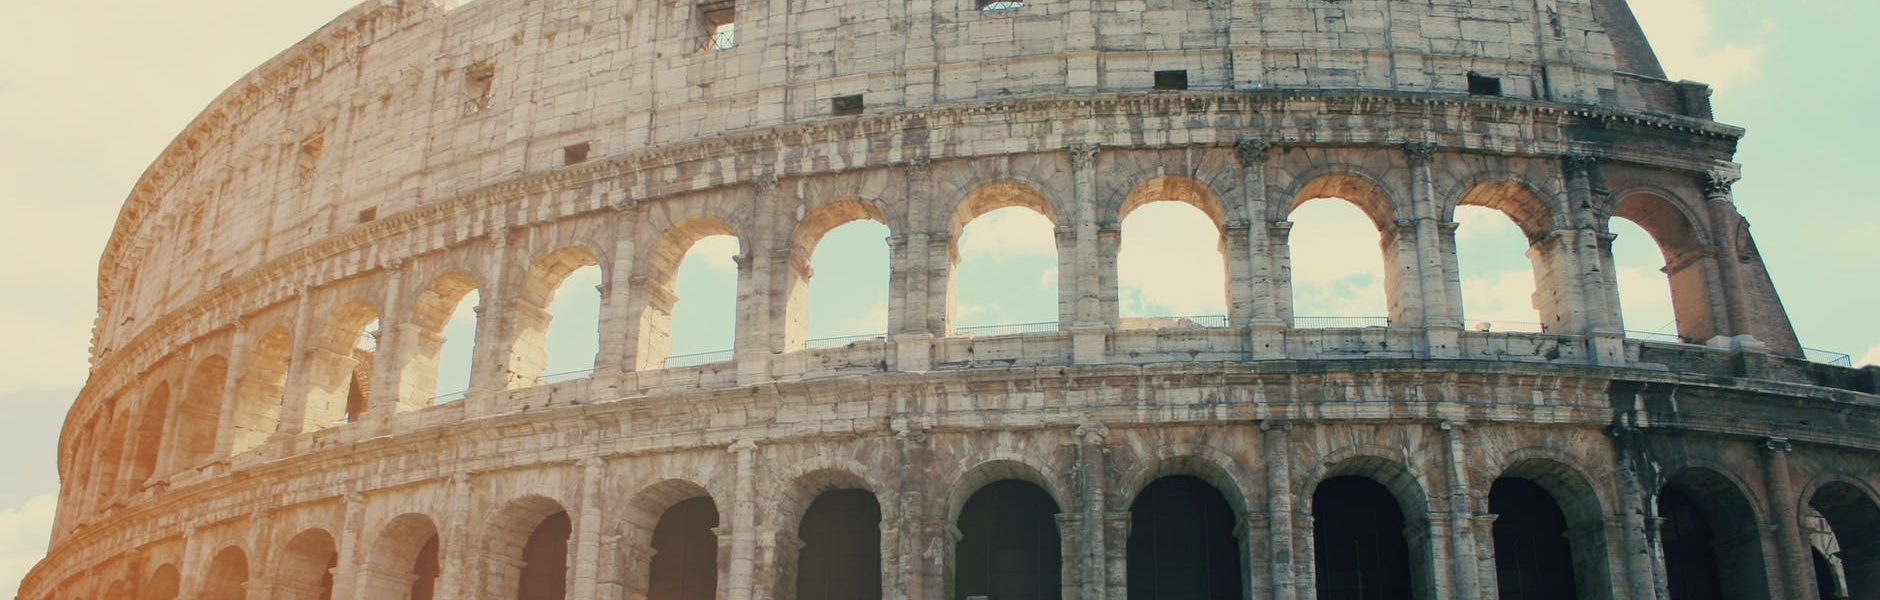 atrakcje Rzymu